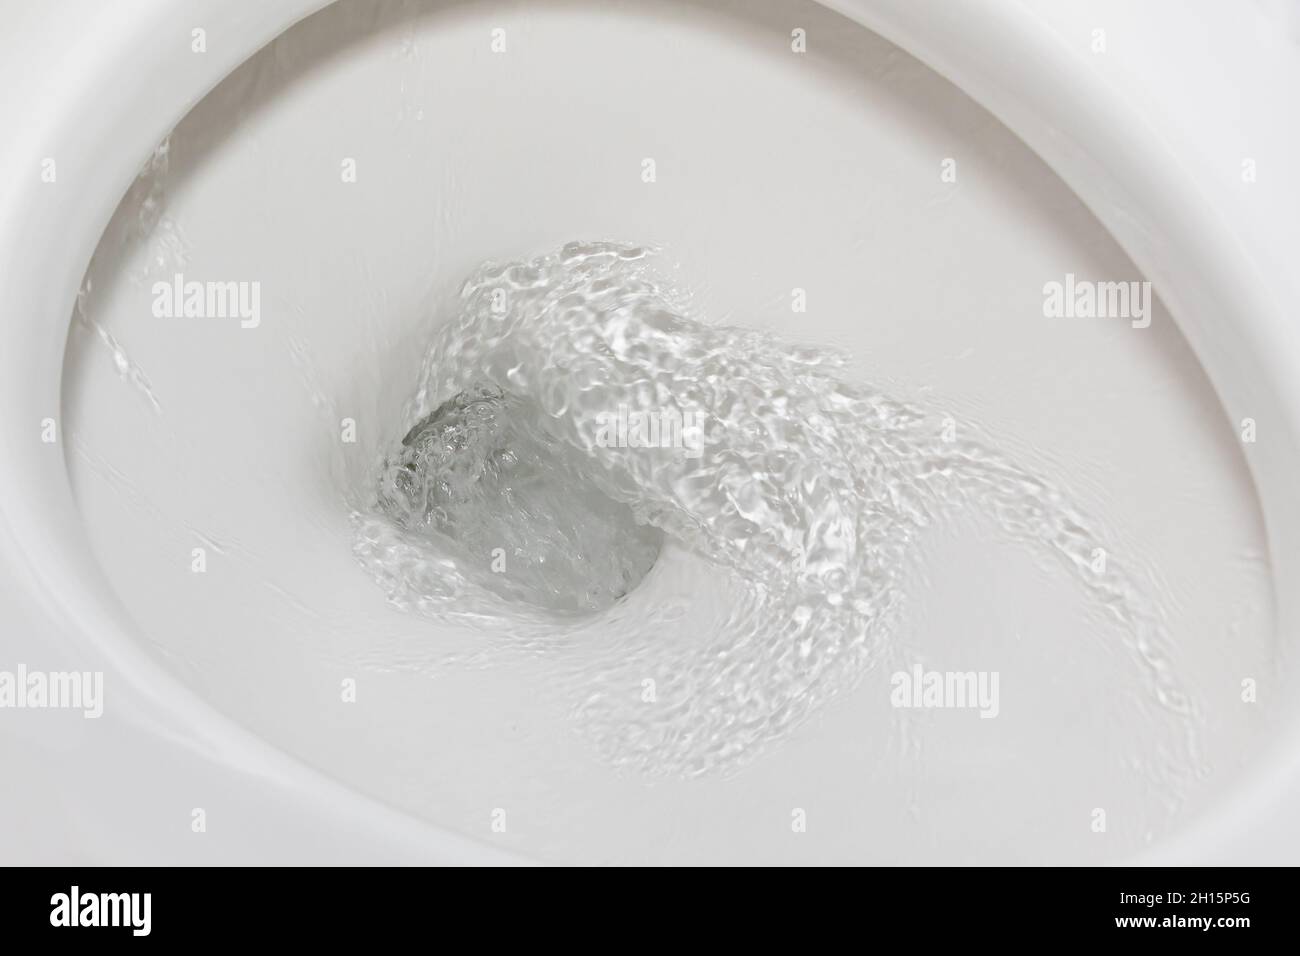 Flou de mouvement de l'eau de rinçage dans la cuvette de toilette.Concept de plomberie, de réparation de maisons et de conservation de l'eau. Banque D'Images